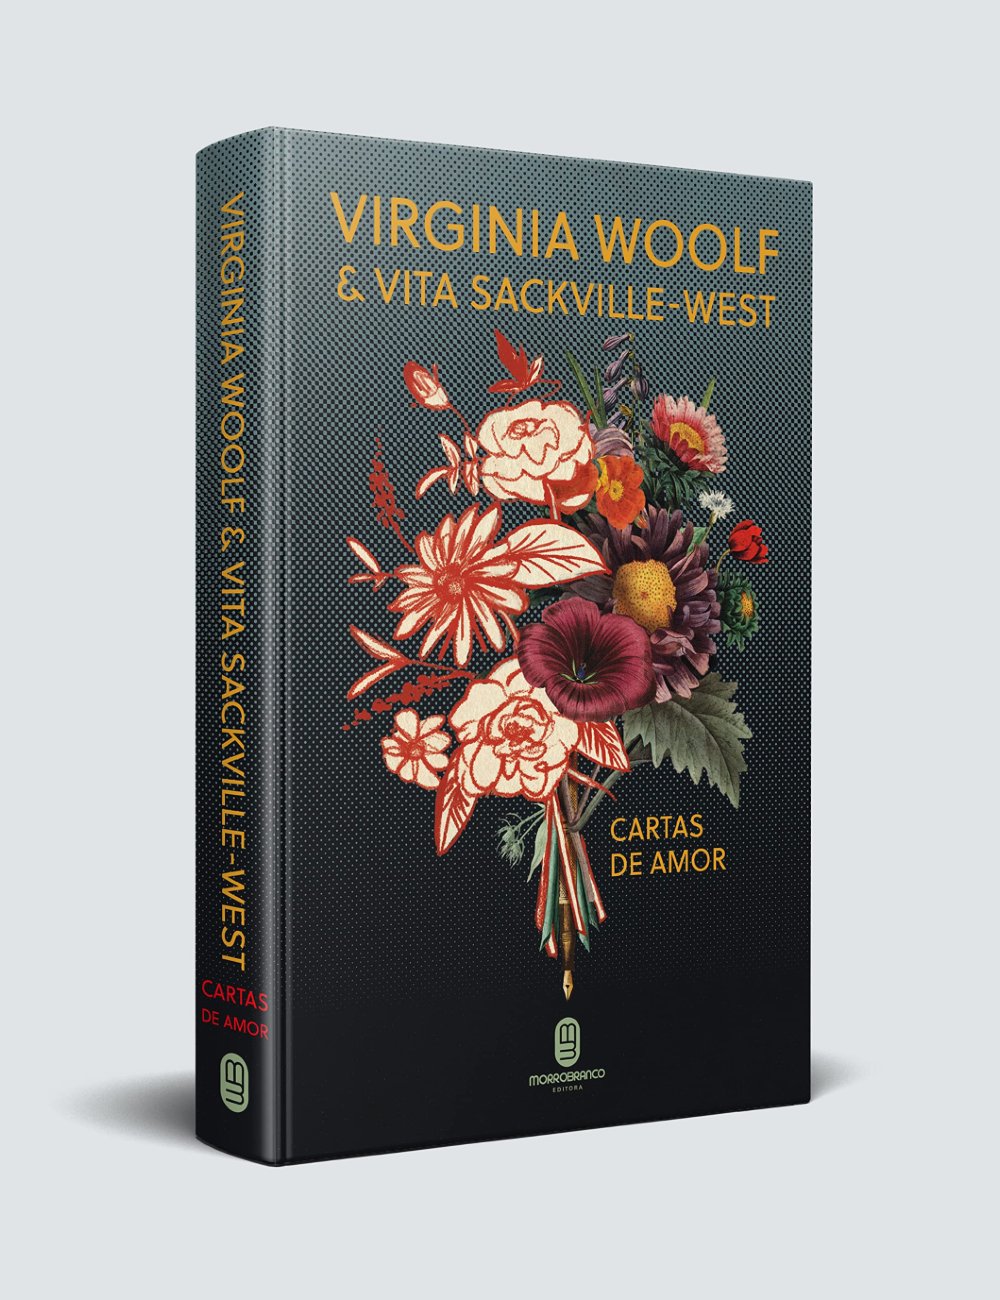 Cartas de Amor - Virgínia Woolf e Vita Sackville-West - livros bons - livros bons - livros bons - livros bons - https://stealthelook.com.br